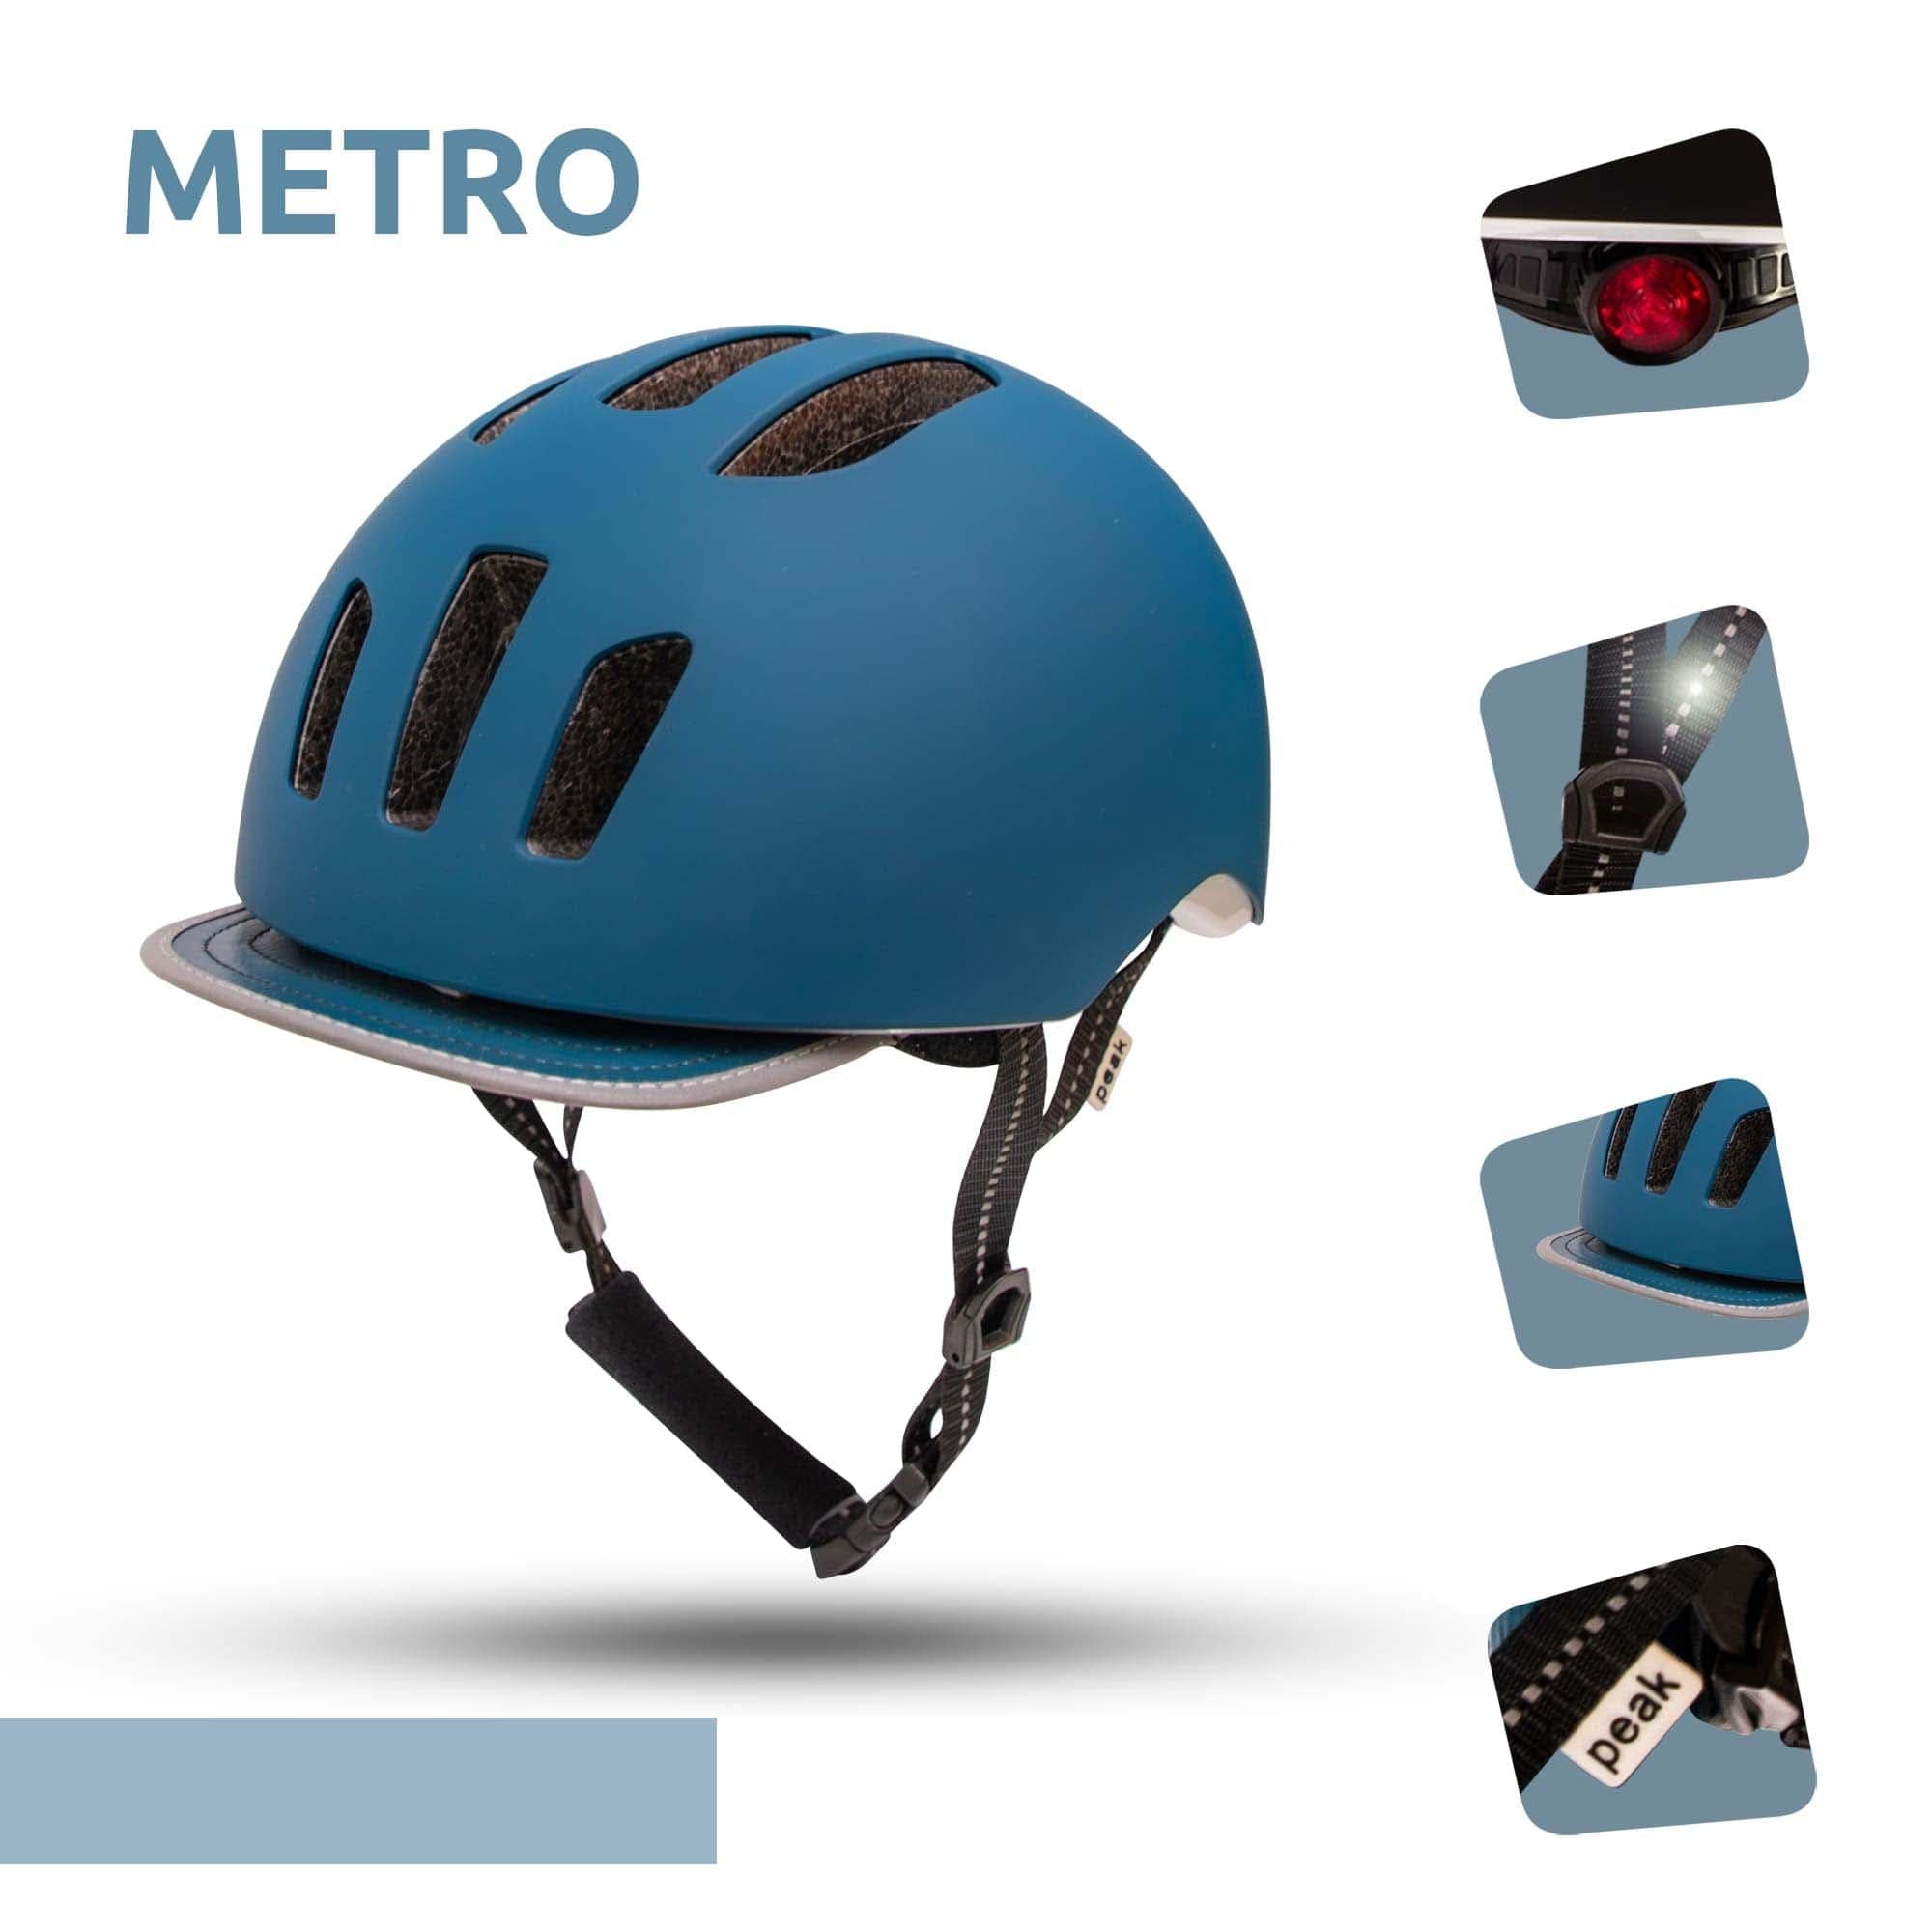  Casco de Bici Metro - Azul Petróleo